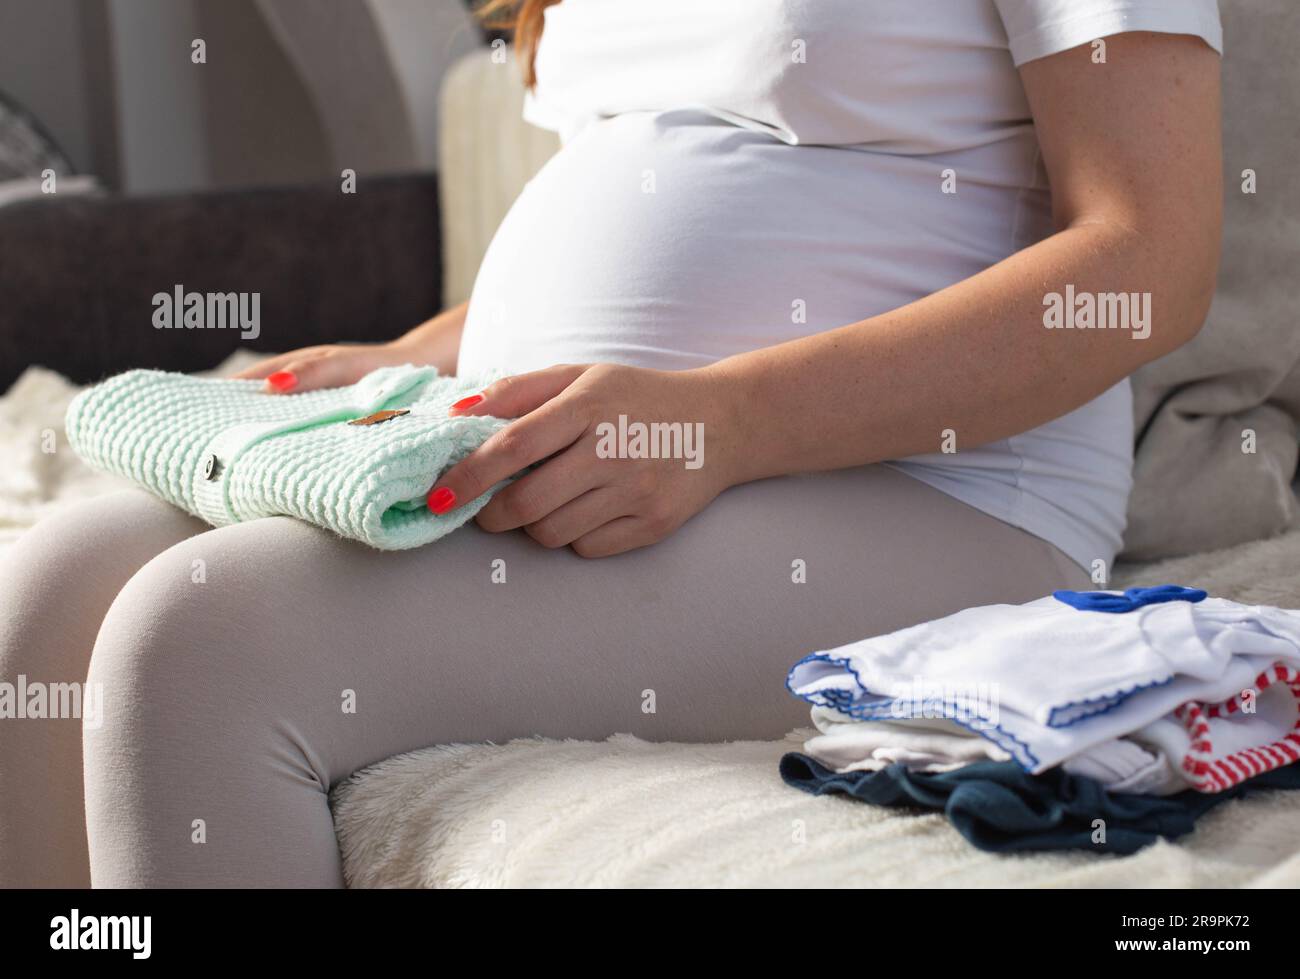 Ein schwangeres Mädchen arrangiert warme Kleidung für ein Neugeborenes. Qualitätskleidung für Babys im Krankenhaus. Stockfoto